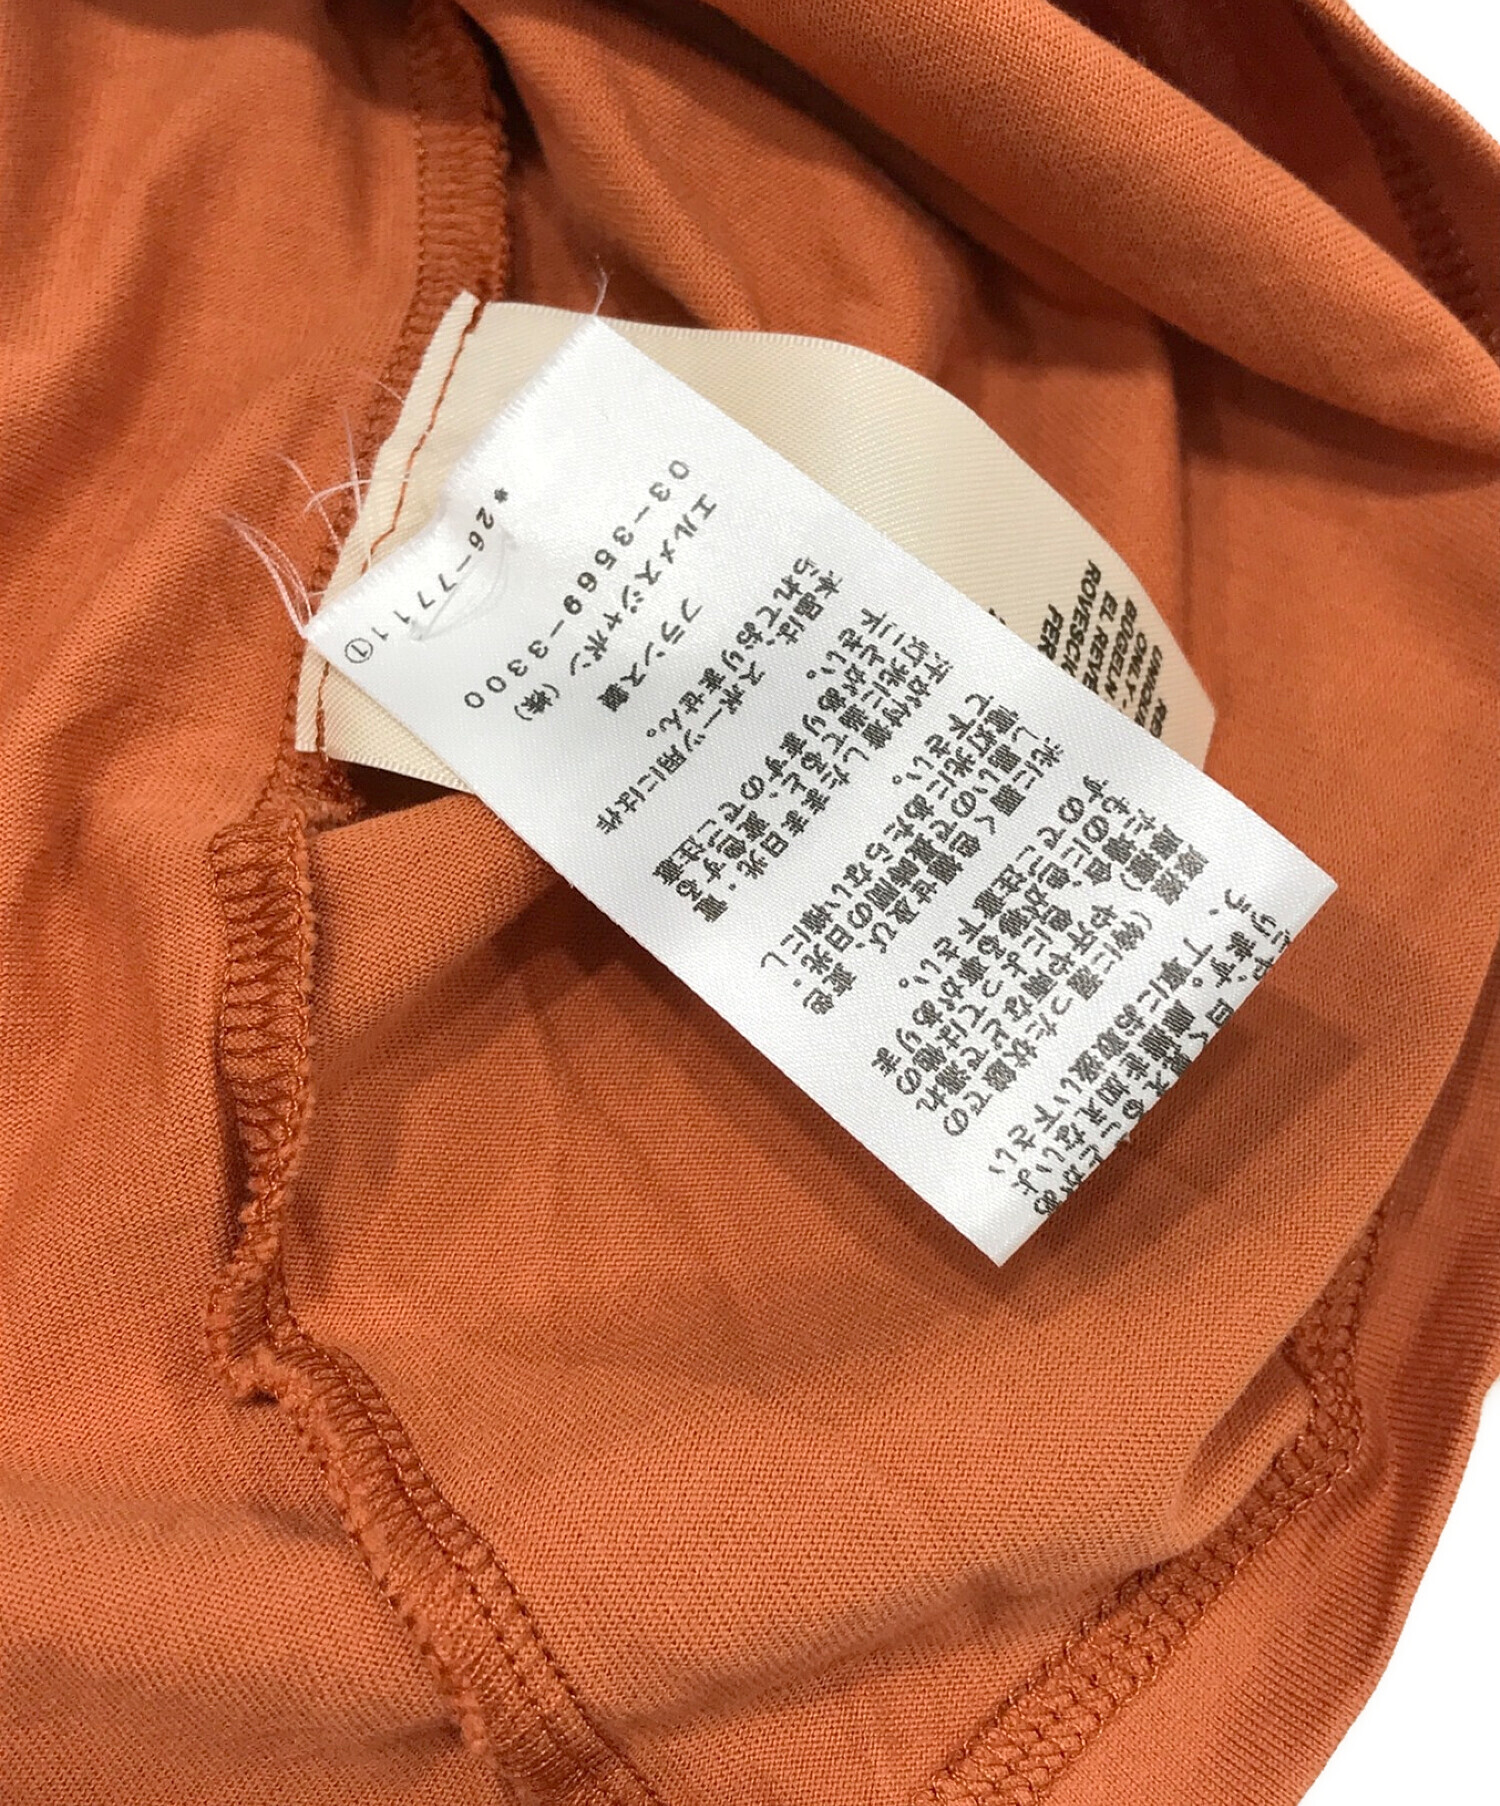 HERMES (エルメス) ポケットTシャツ オレンジ サイズ:SIZE 40